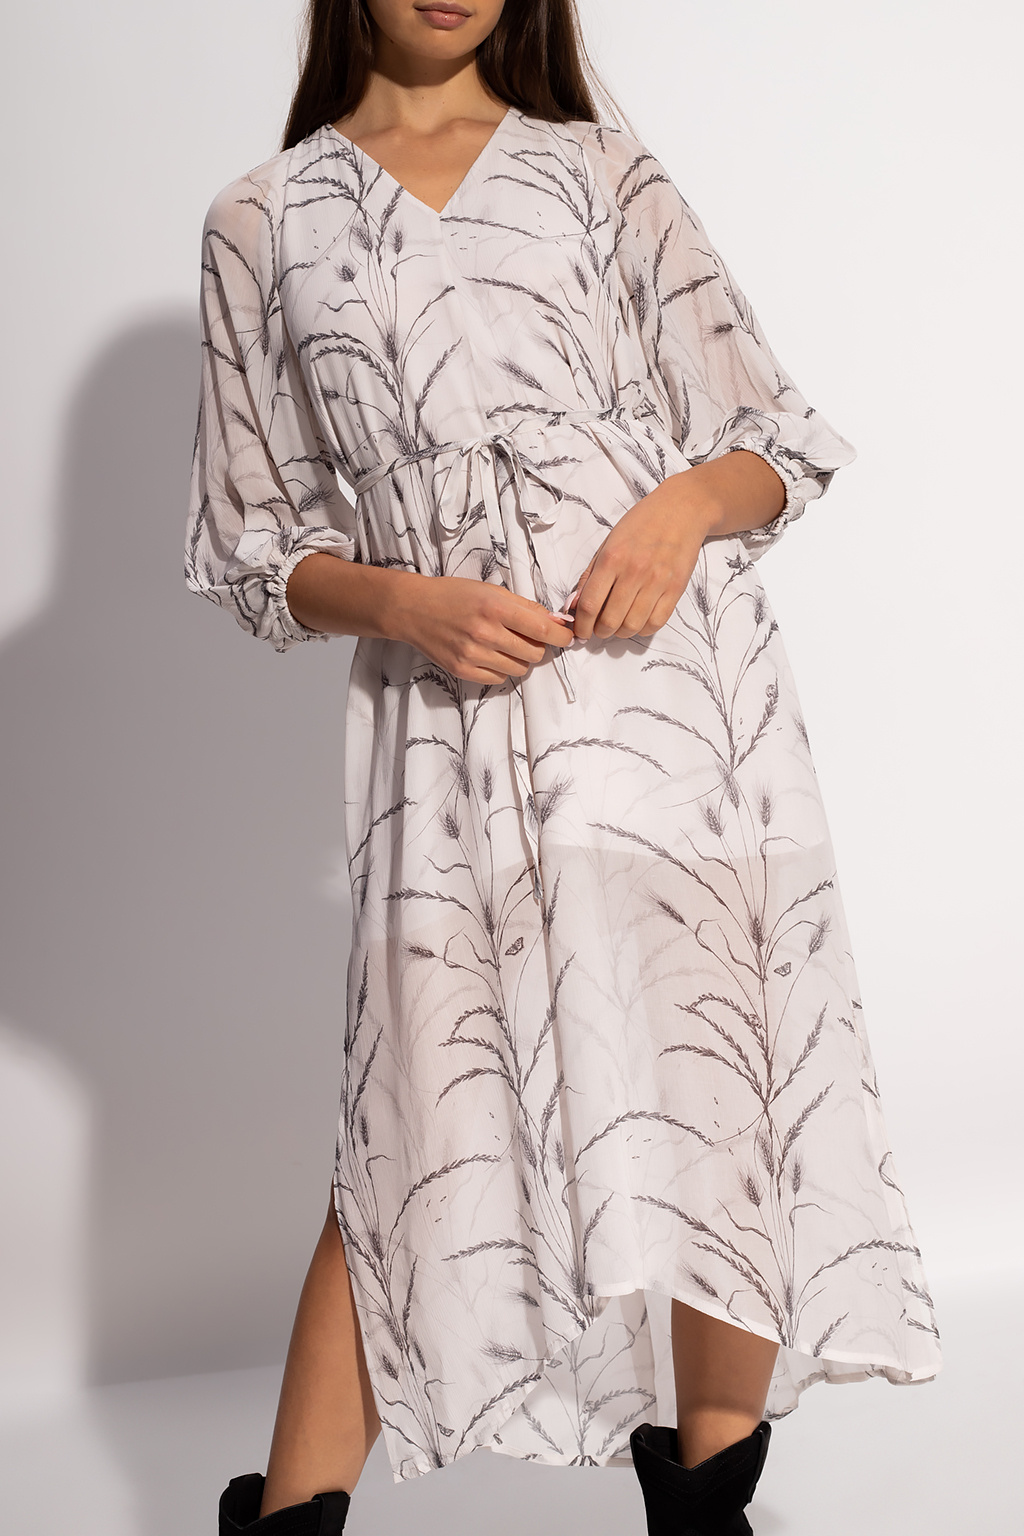 AllSaints ‘Joelle’ patterned dress